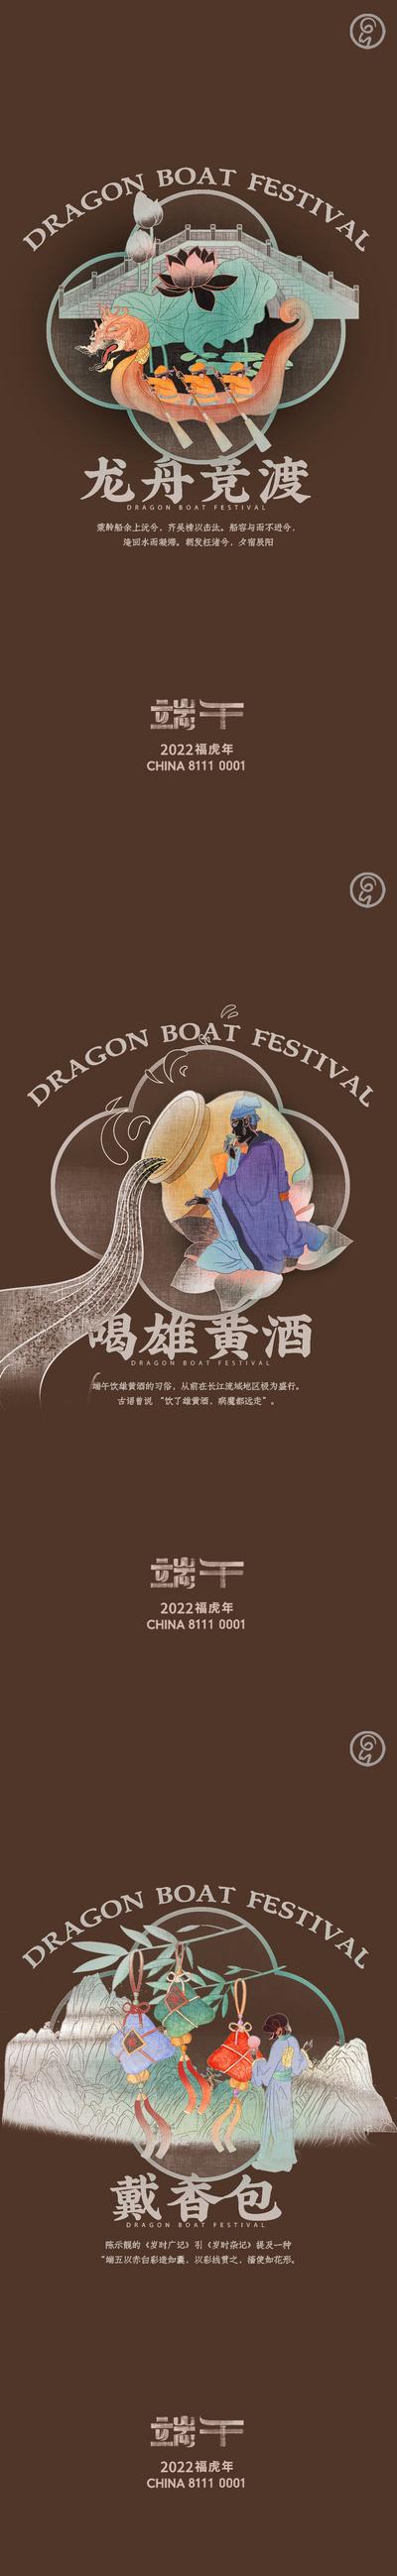 南门网 海报 中国传统节日 端午节 系列 插画 龙舟 黄酒 香包 粽子 中式